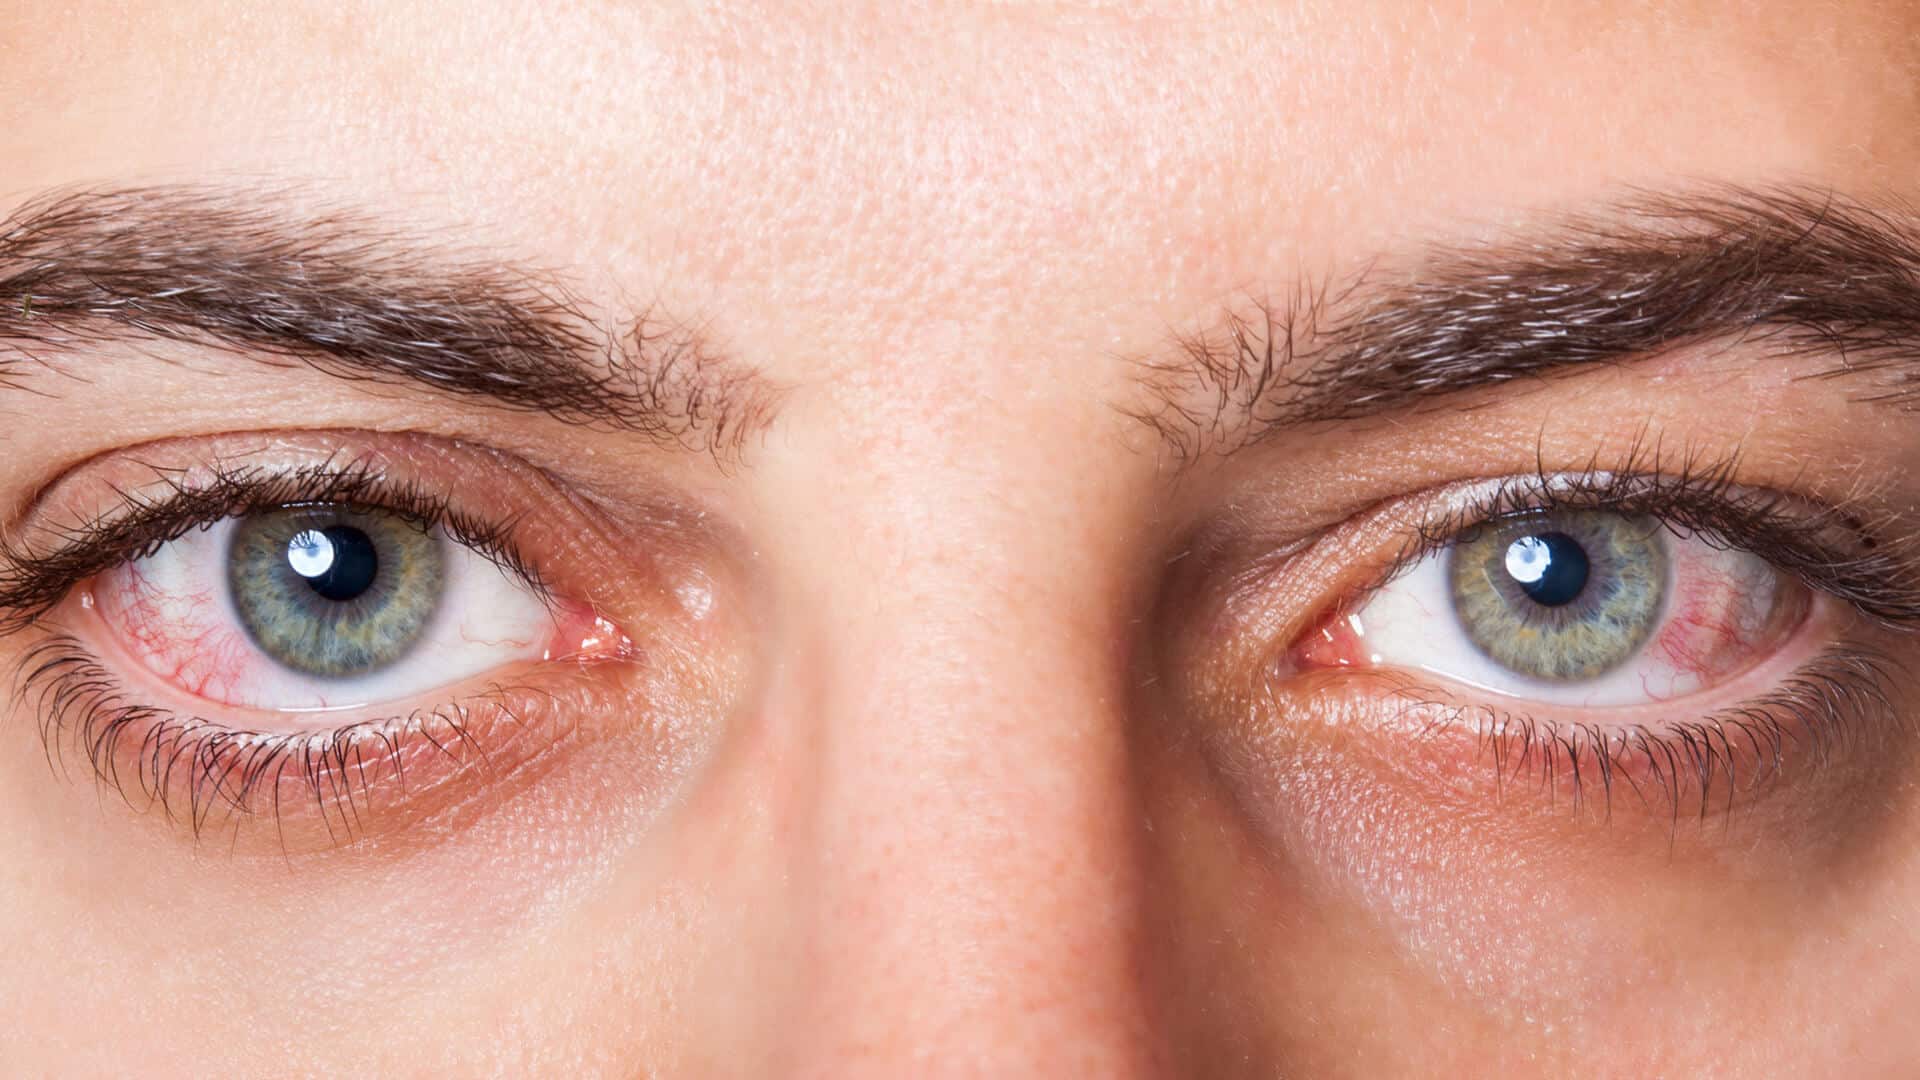 افضل قطرة لعلاج جفاف العين والطرق الطبيعية لتقليل الآلام في العين